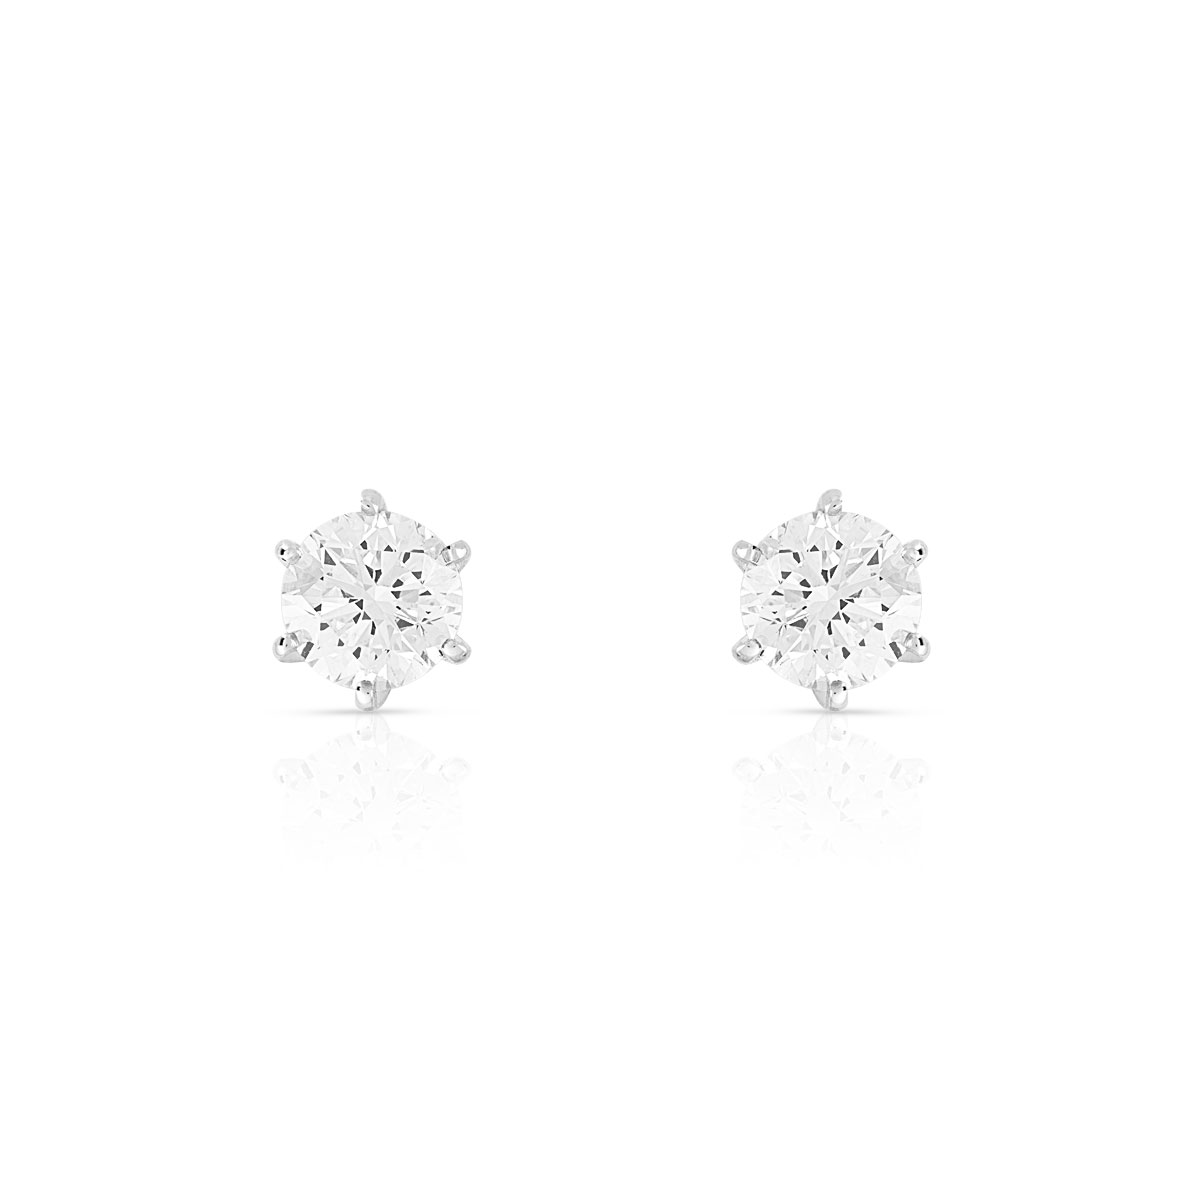 Boucles d'oreilles or 750 blanc diamants synthétiques 0.80 carat